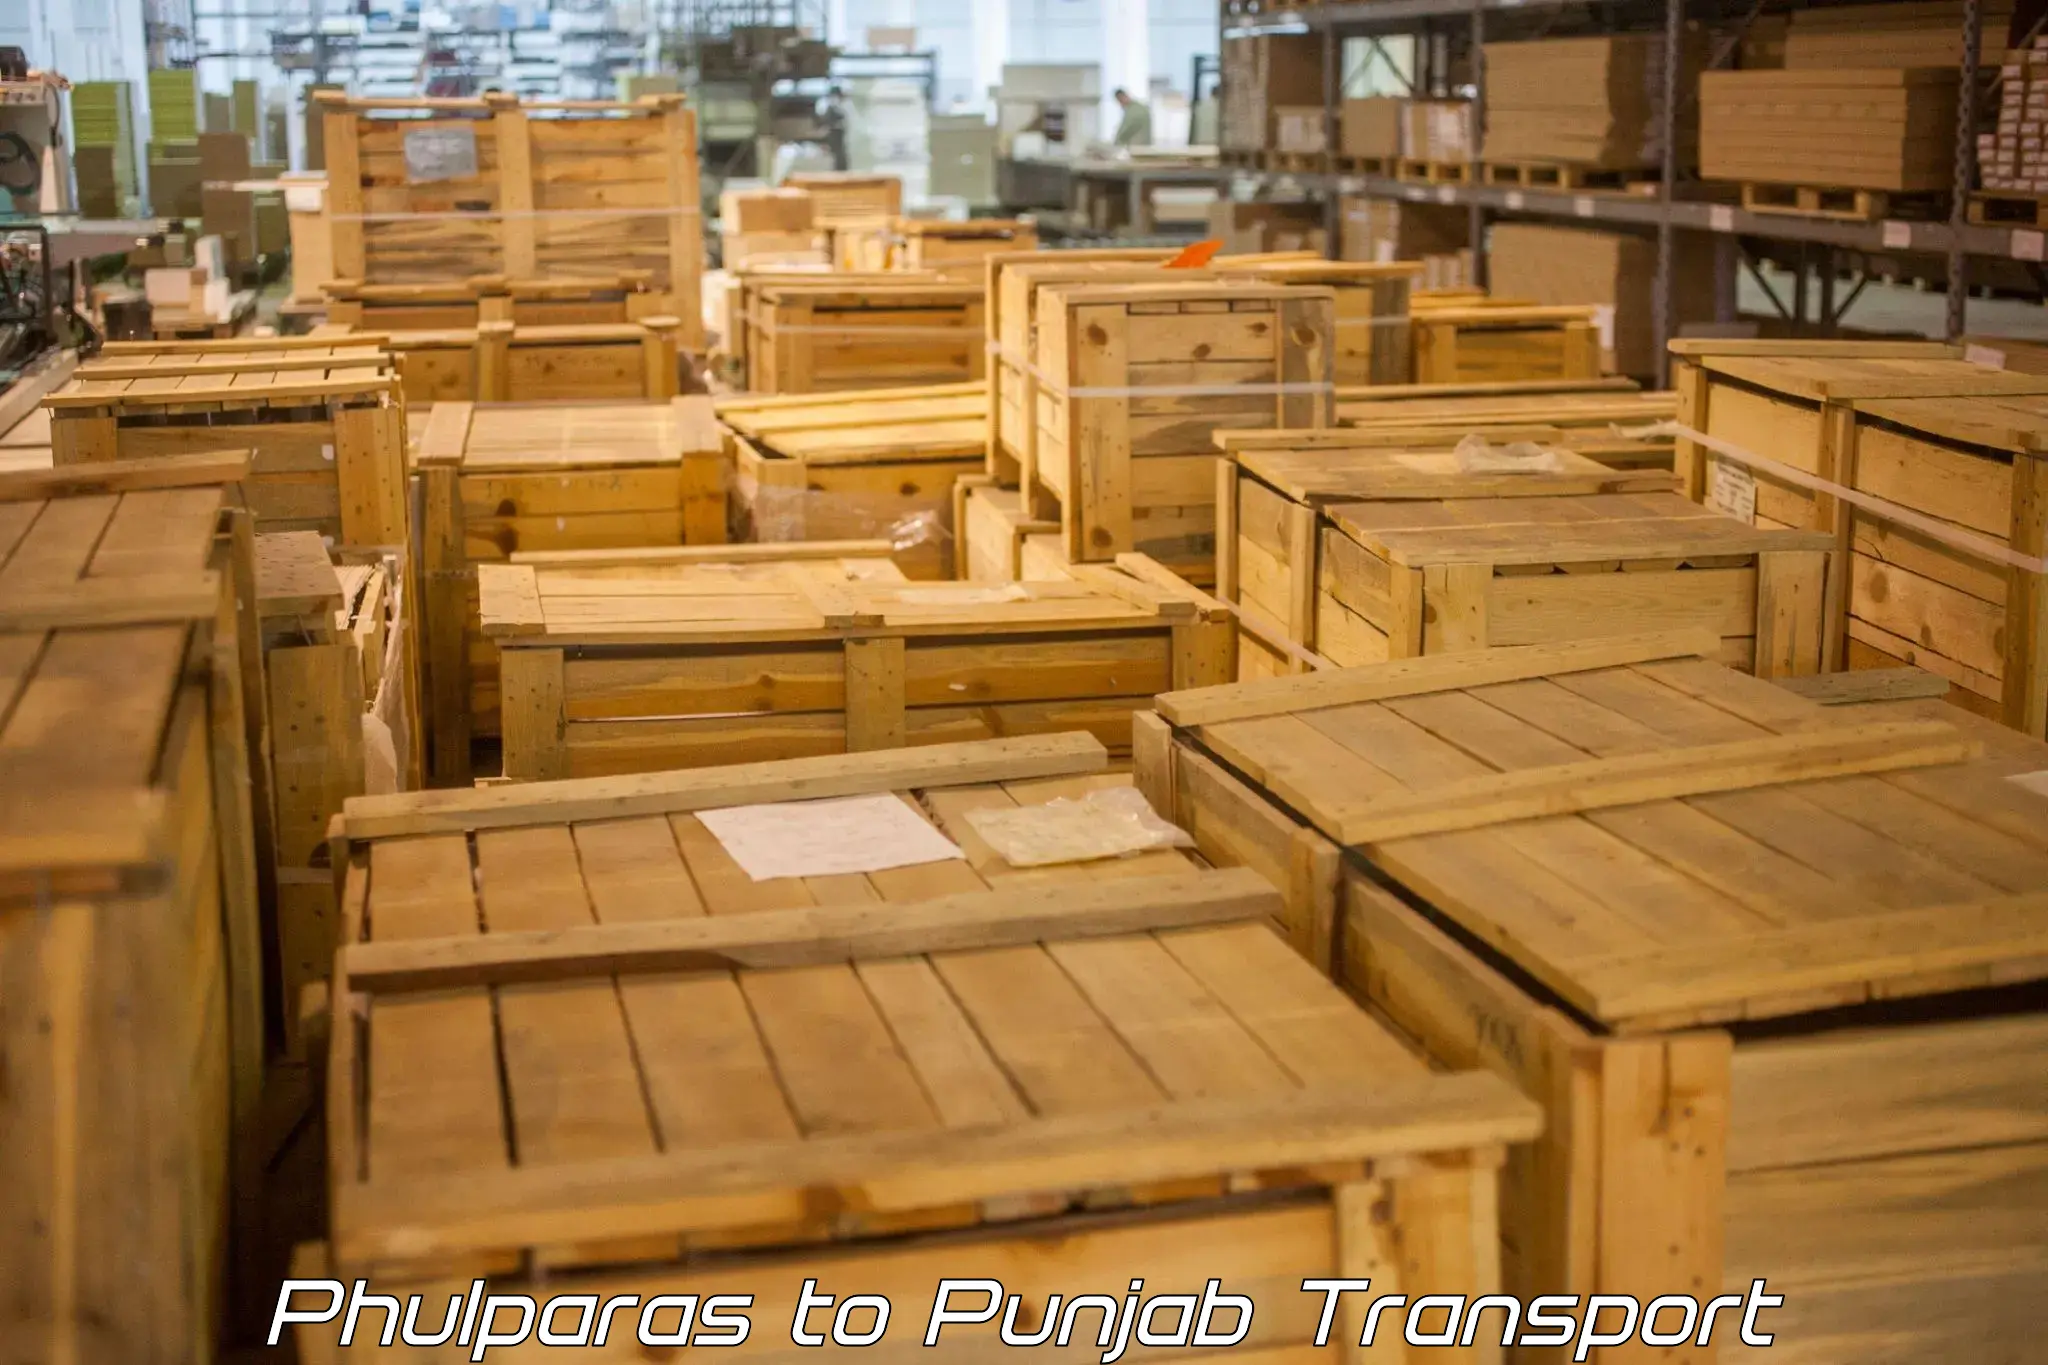 Transport services Phulparas to Phagwara